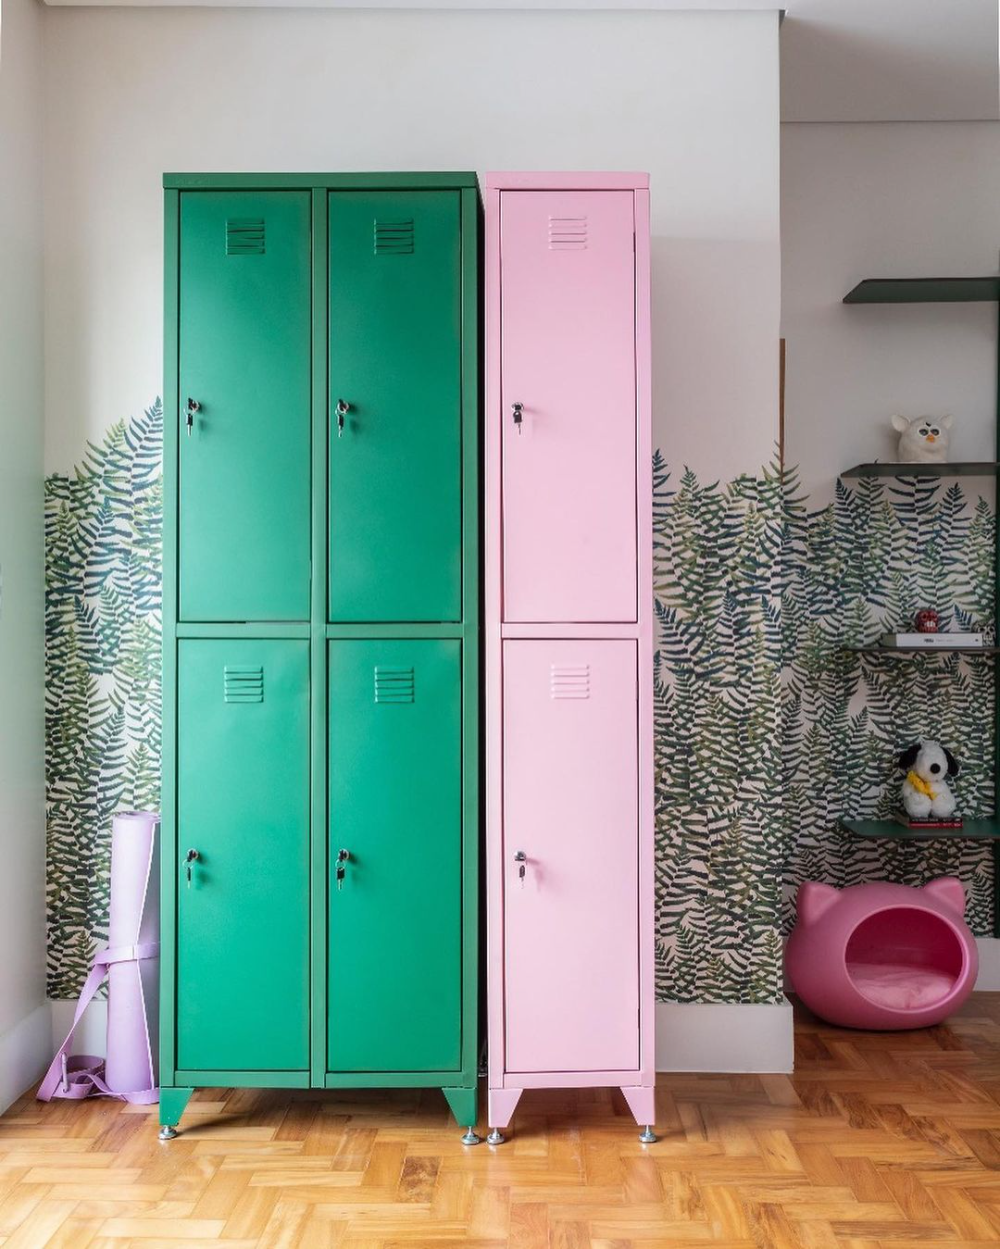 ambiente com lockers de aço verde e rosa e parede com desenho de folhagem